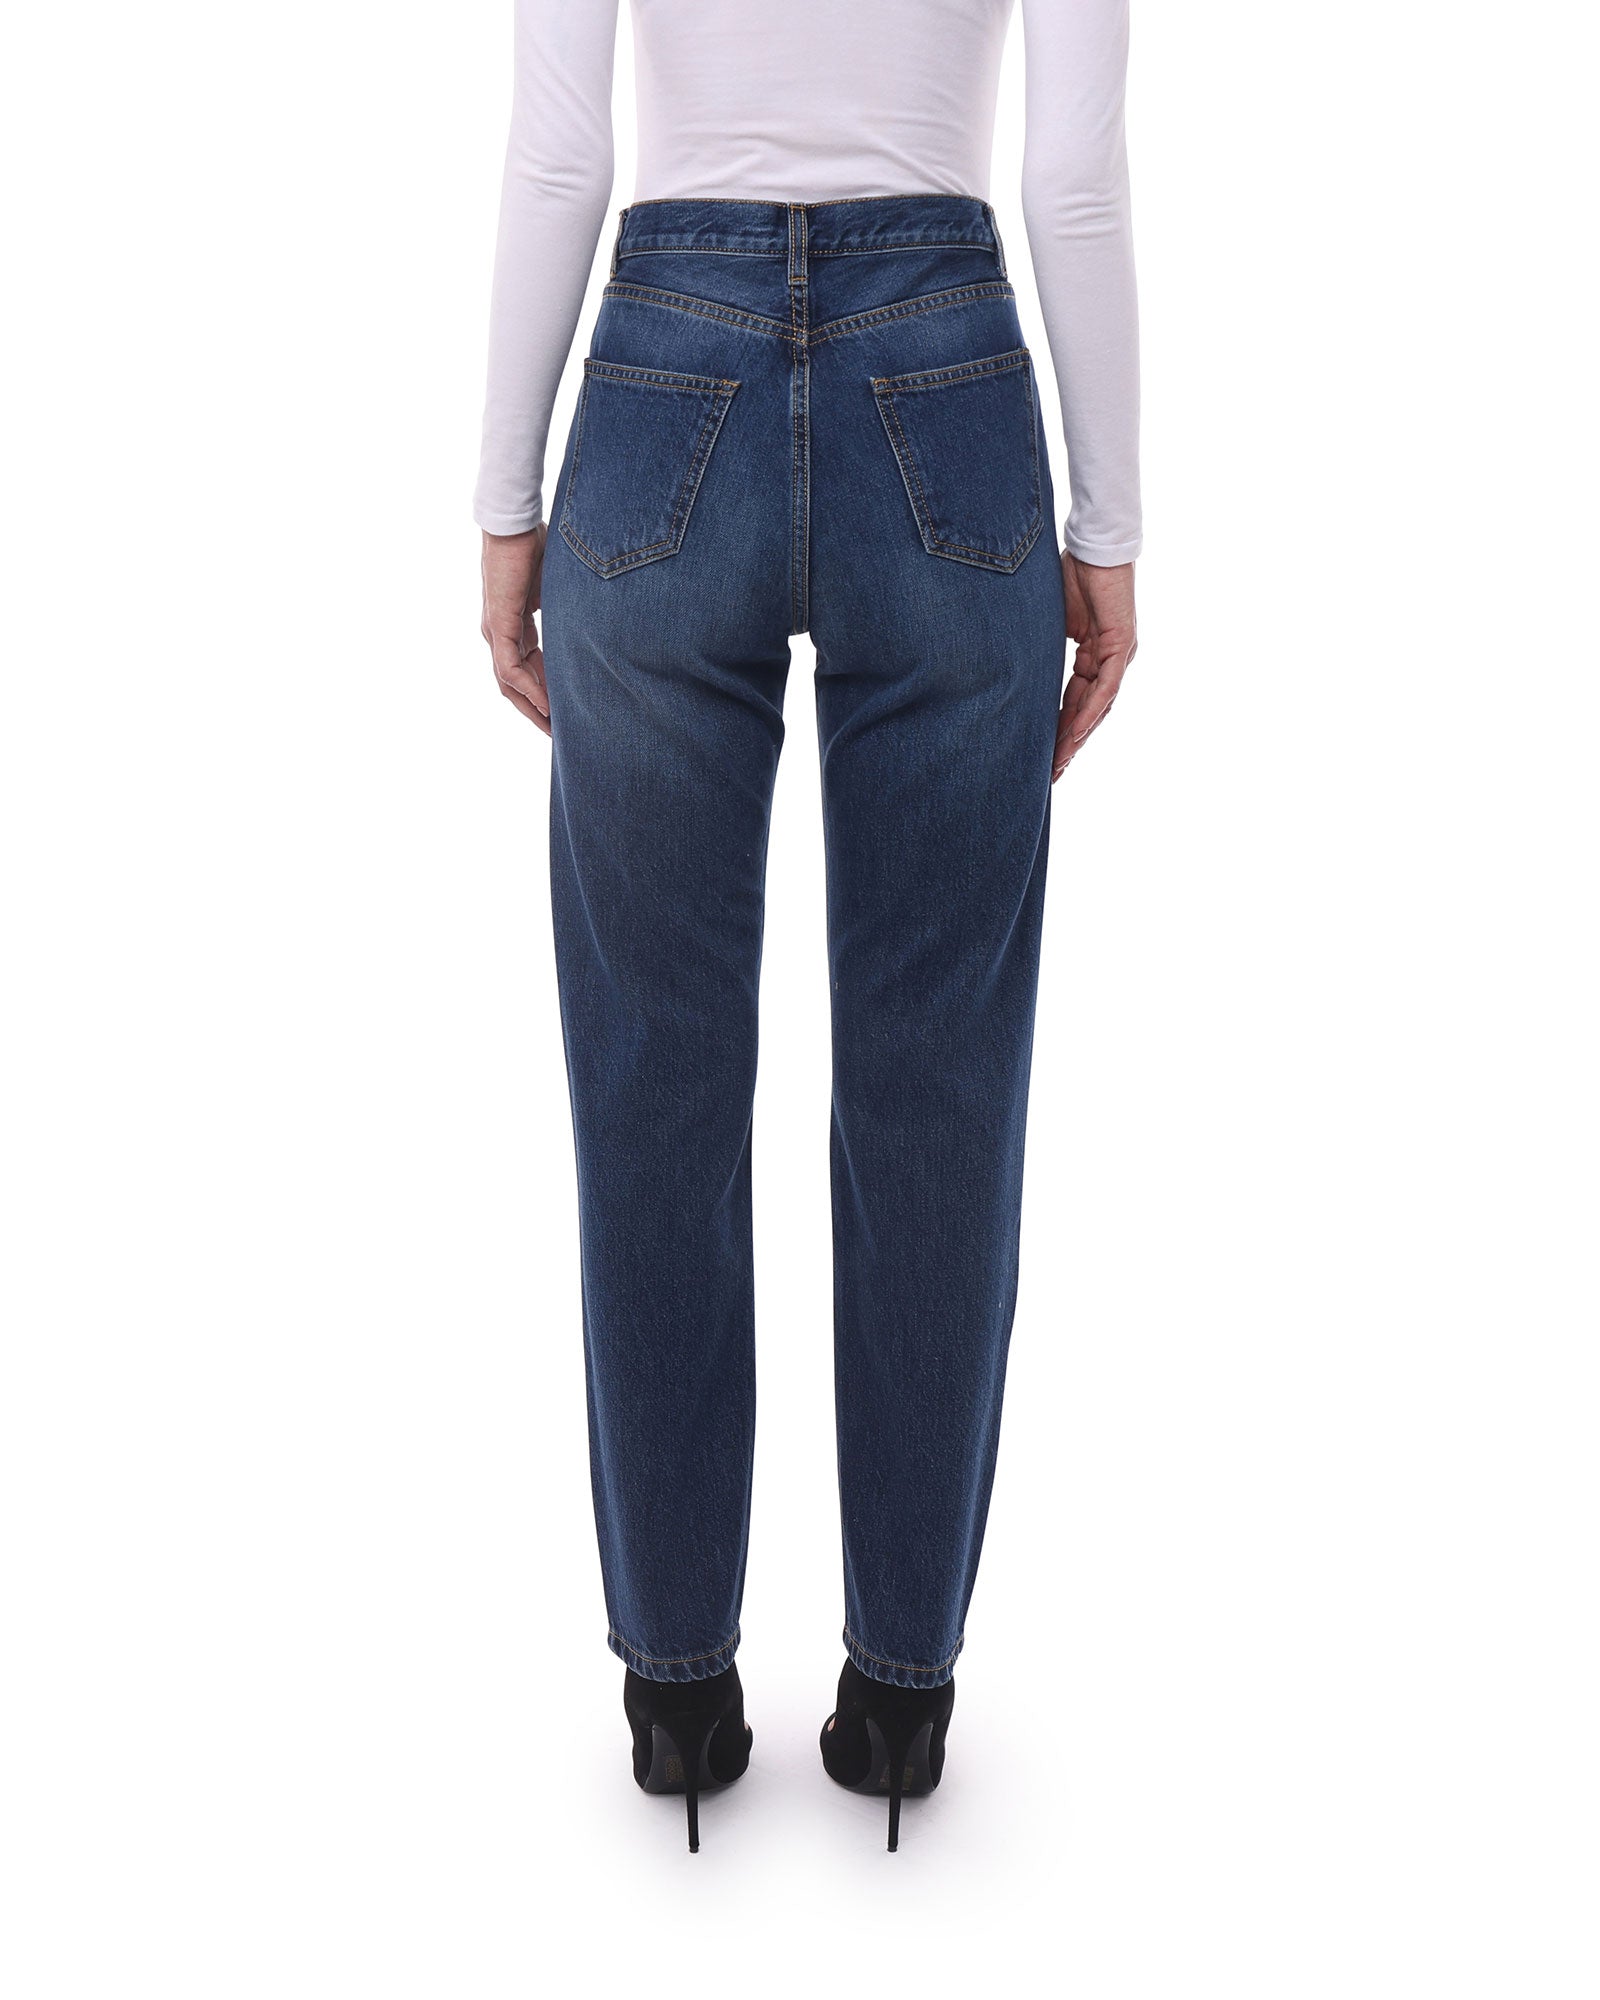 Jeans Donna in Cotone Organico (Taper - Scuro)